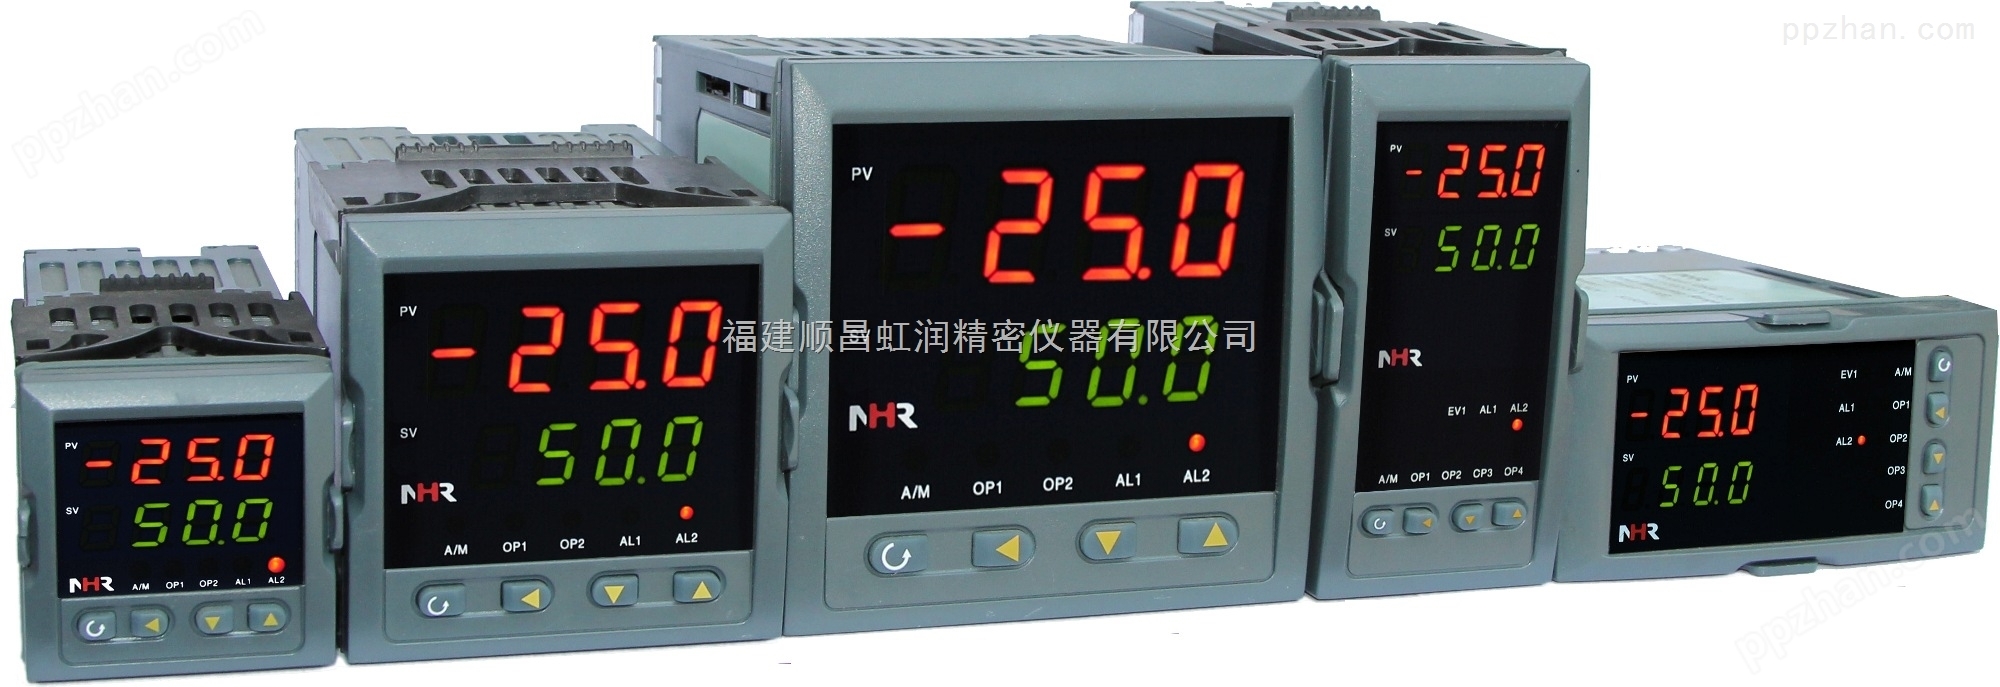 *NHR-5300系列人工智能温控器/调节仪